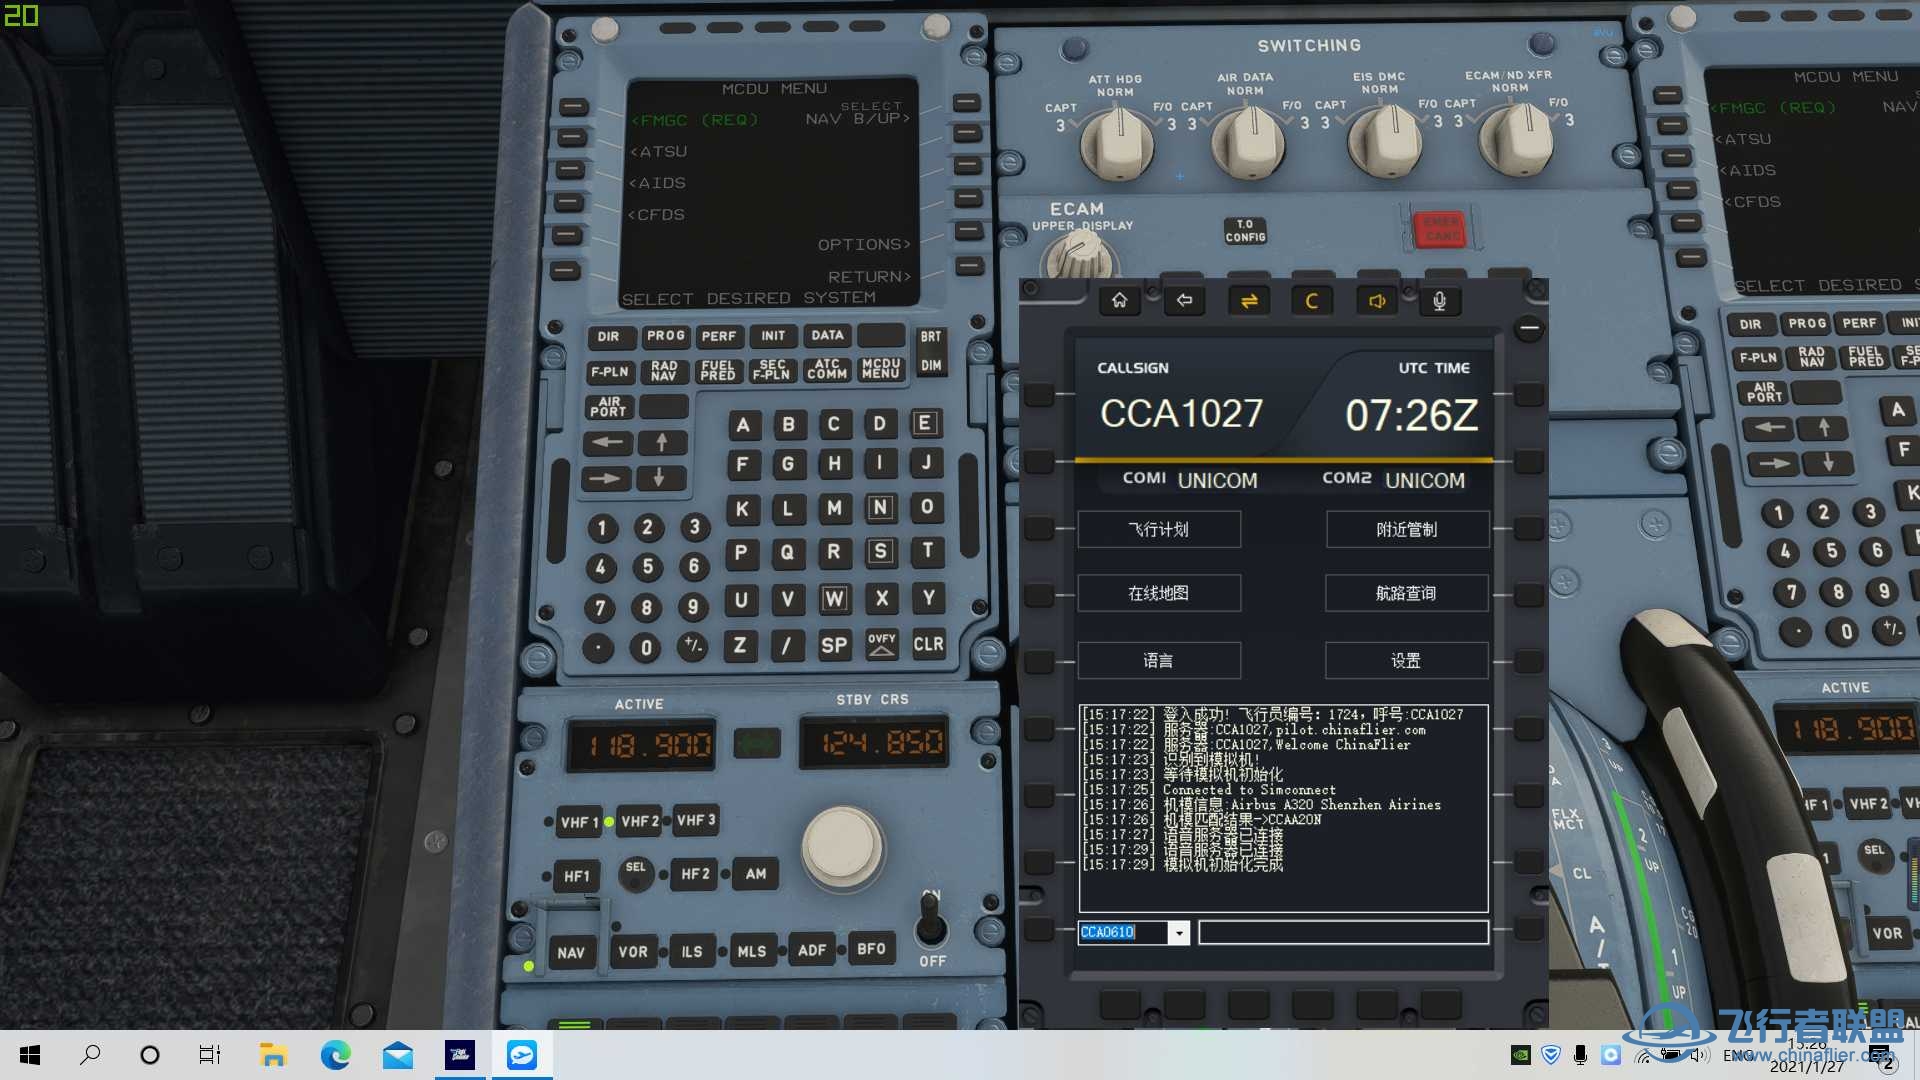 【求助】连飞软件COM1 COM2一直显示UNICOM-4094 